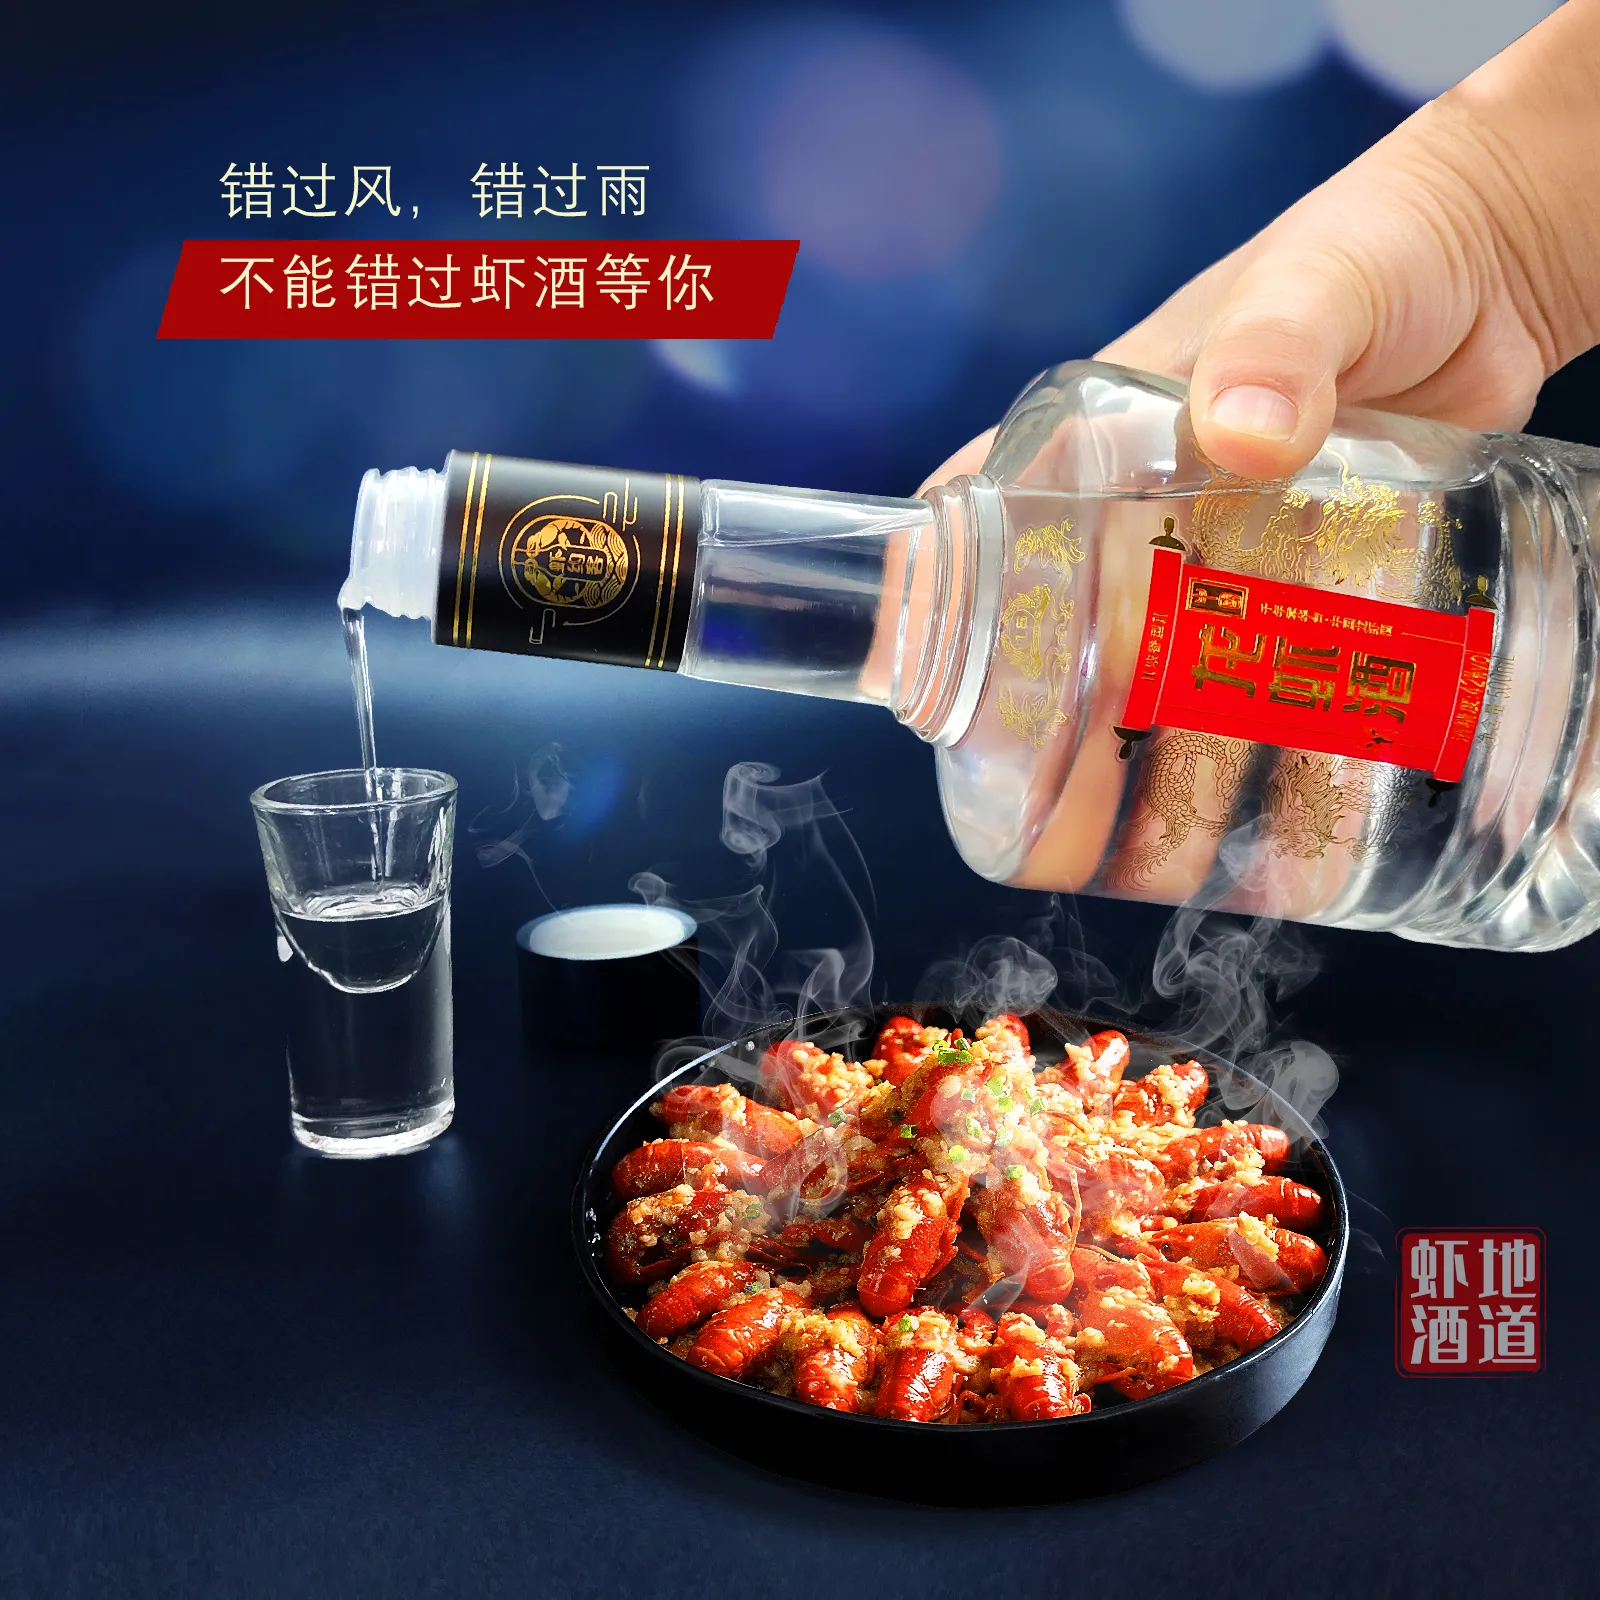 42°国灿 中国龙虾酒 一生必喝的虾酒